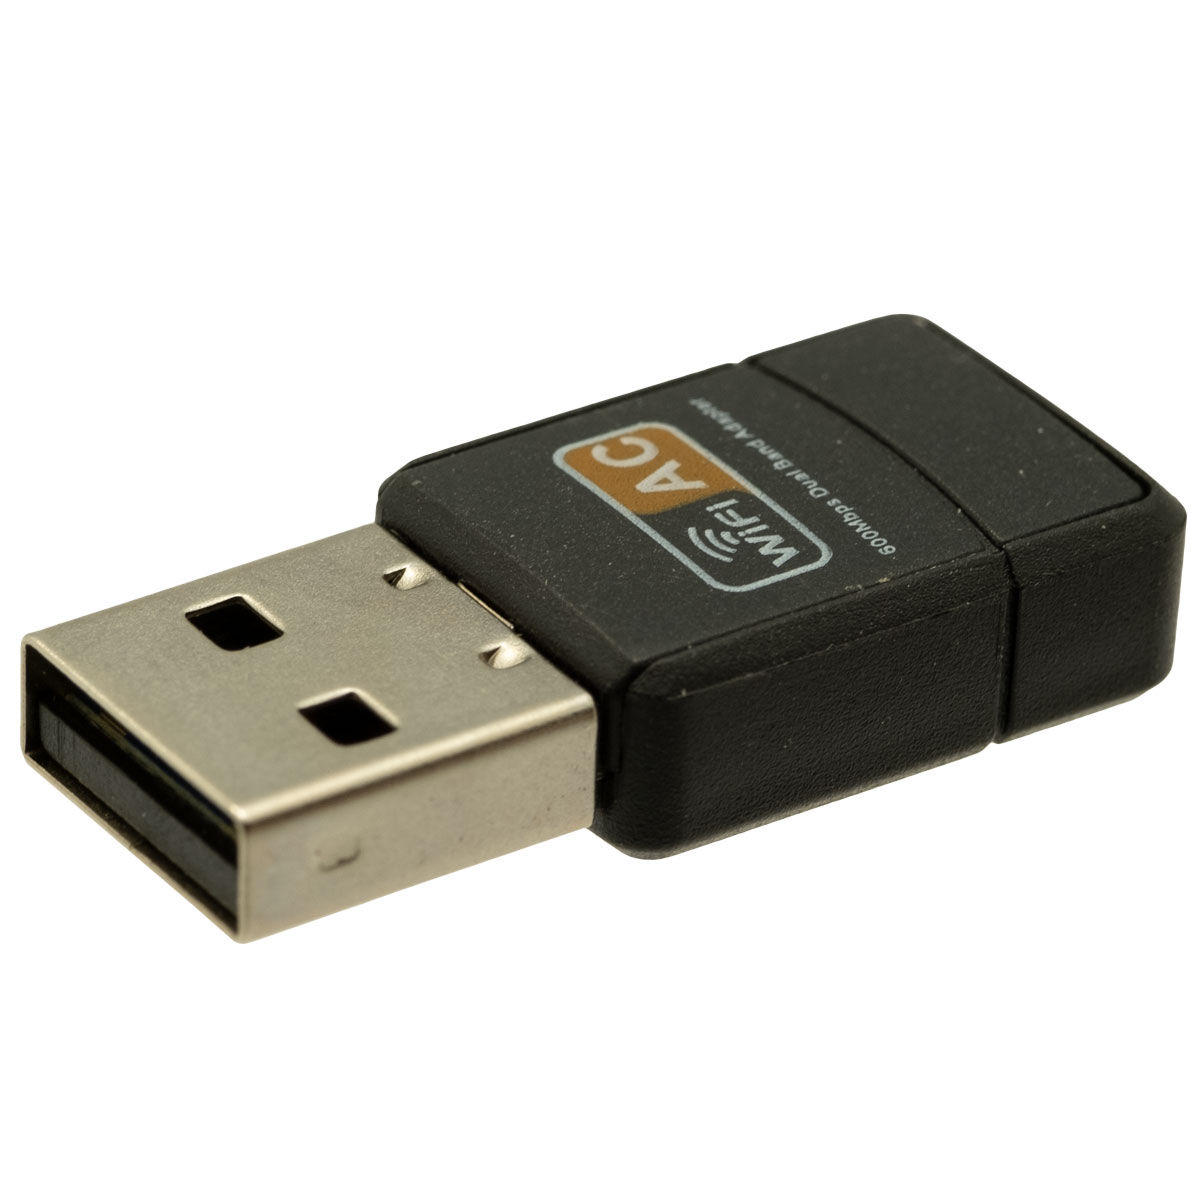 WIFI AC par adaptateur USB, 600Mbps